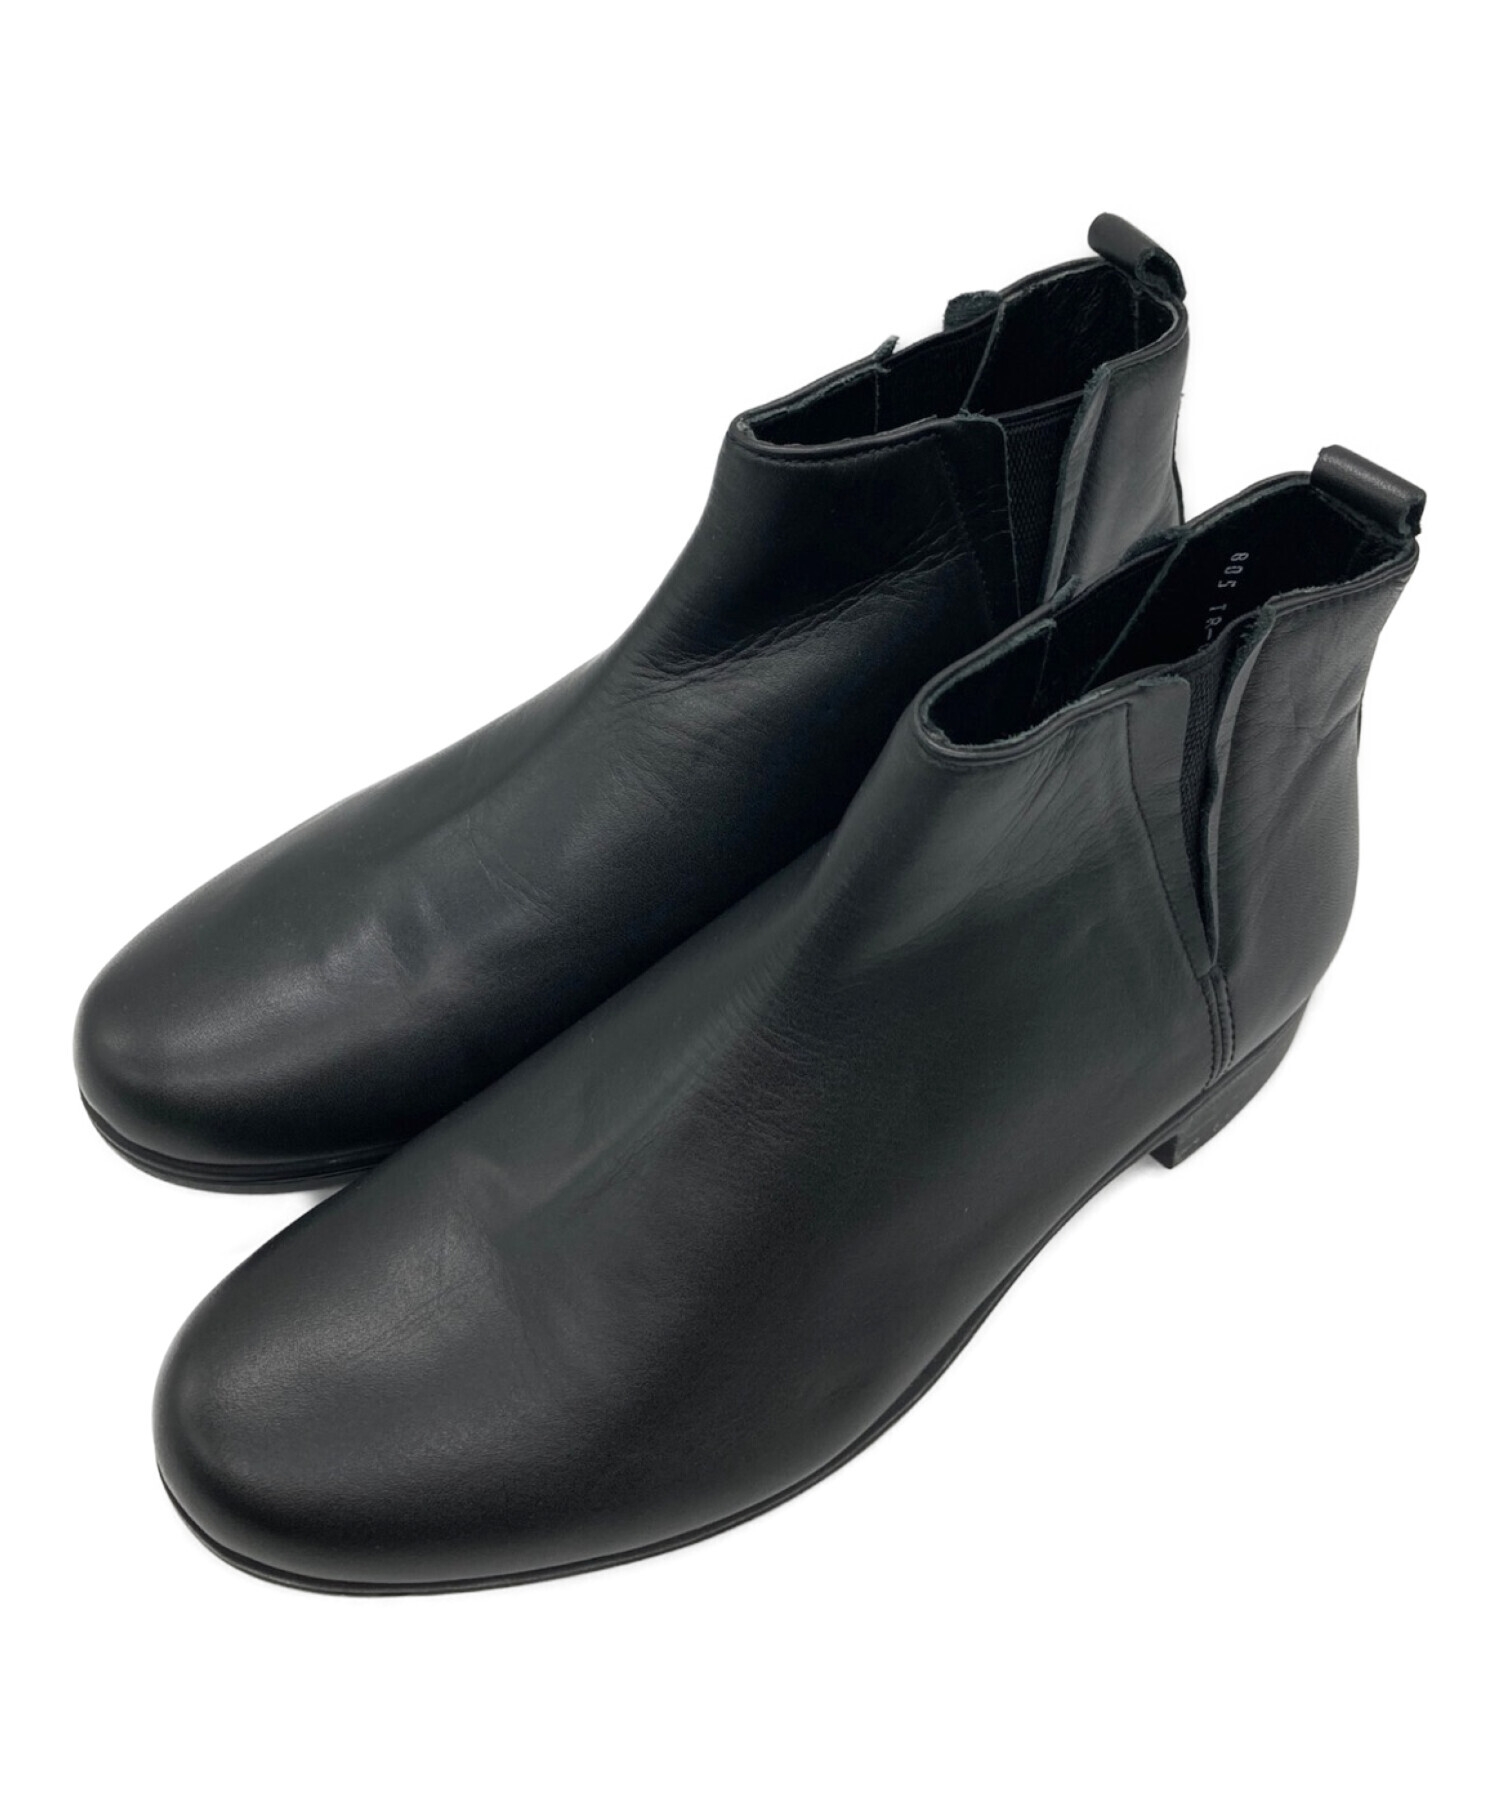 travel shoes by chausser (トラベルシューズバイショセ) サイドゴアブーツ ブラック サイズ:36